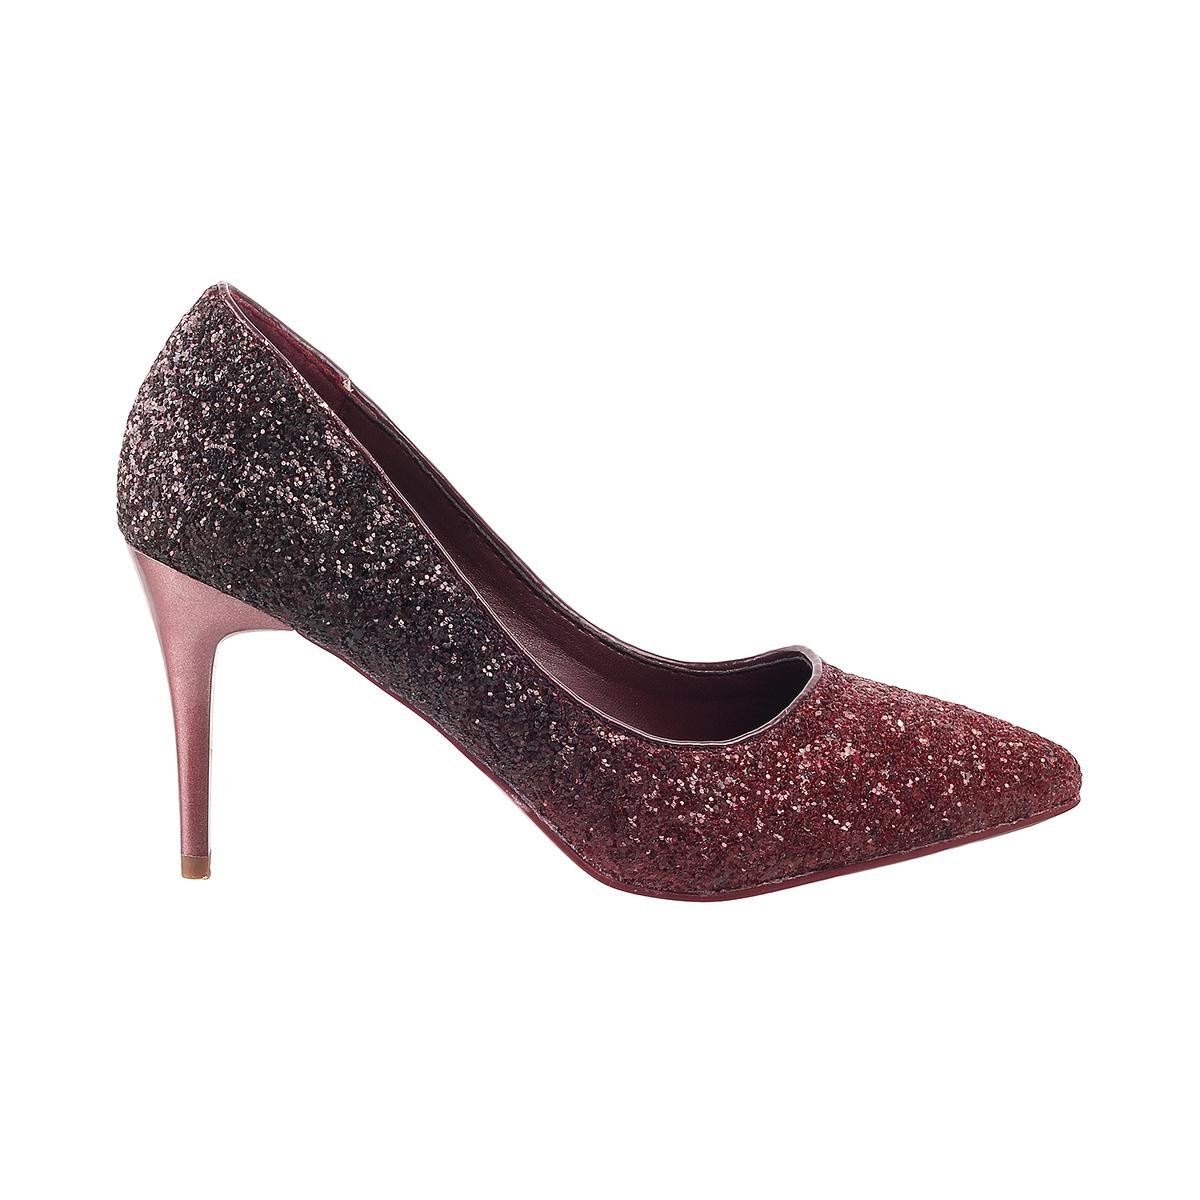 New look burgundy heels | Burgundy heels, Heels, Shoe gallery